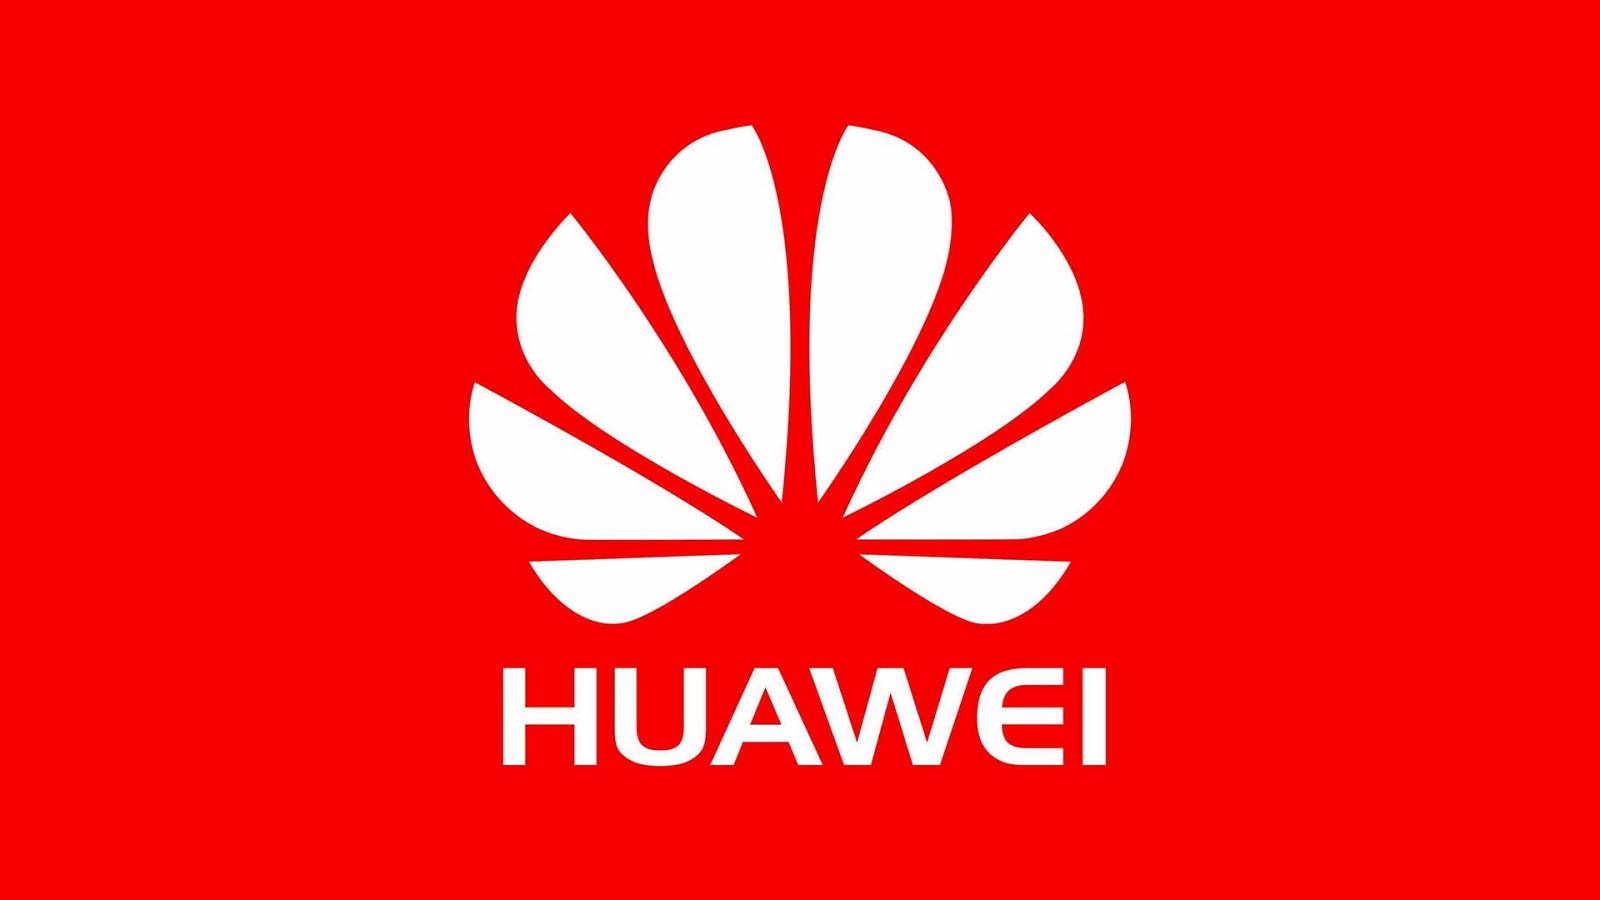 Huawei HAASTAA USA:n Ilmoitus osoittaa yrityksen vahvuuden